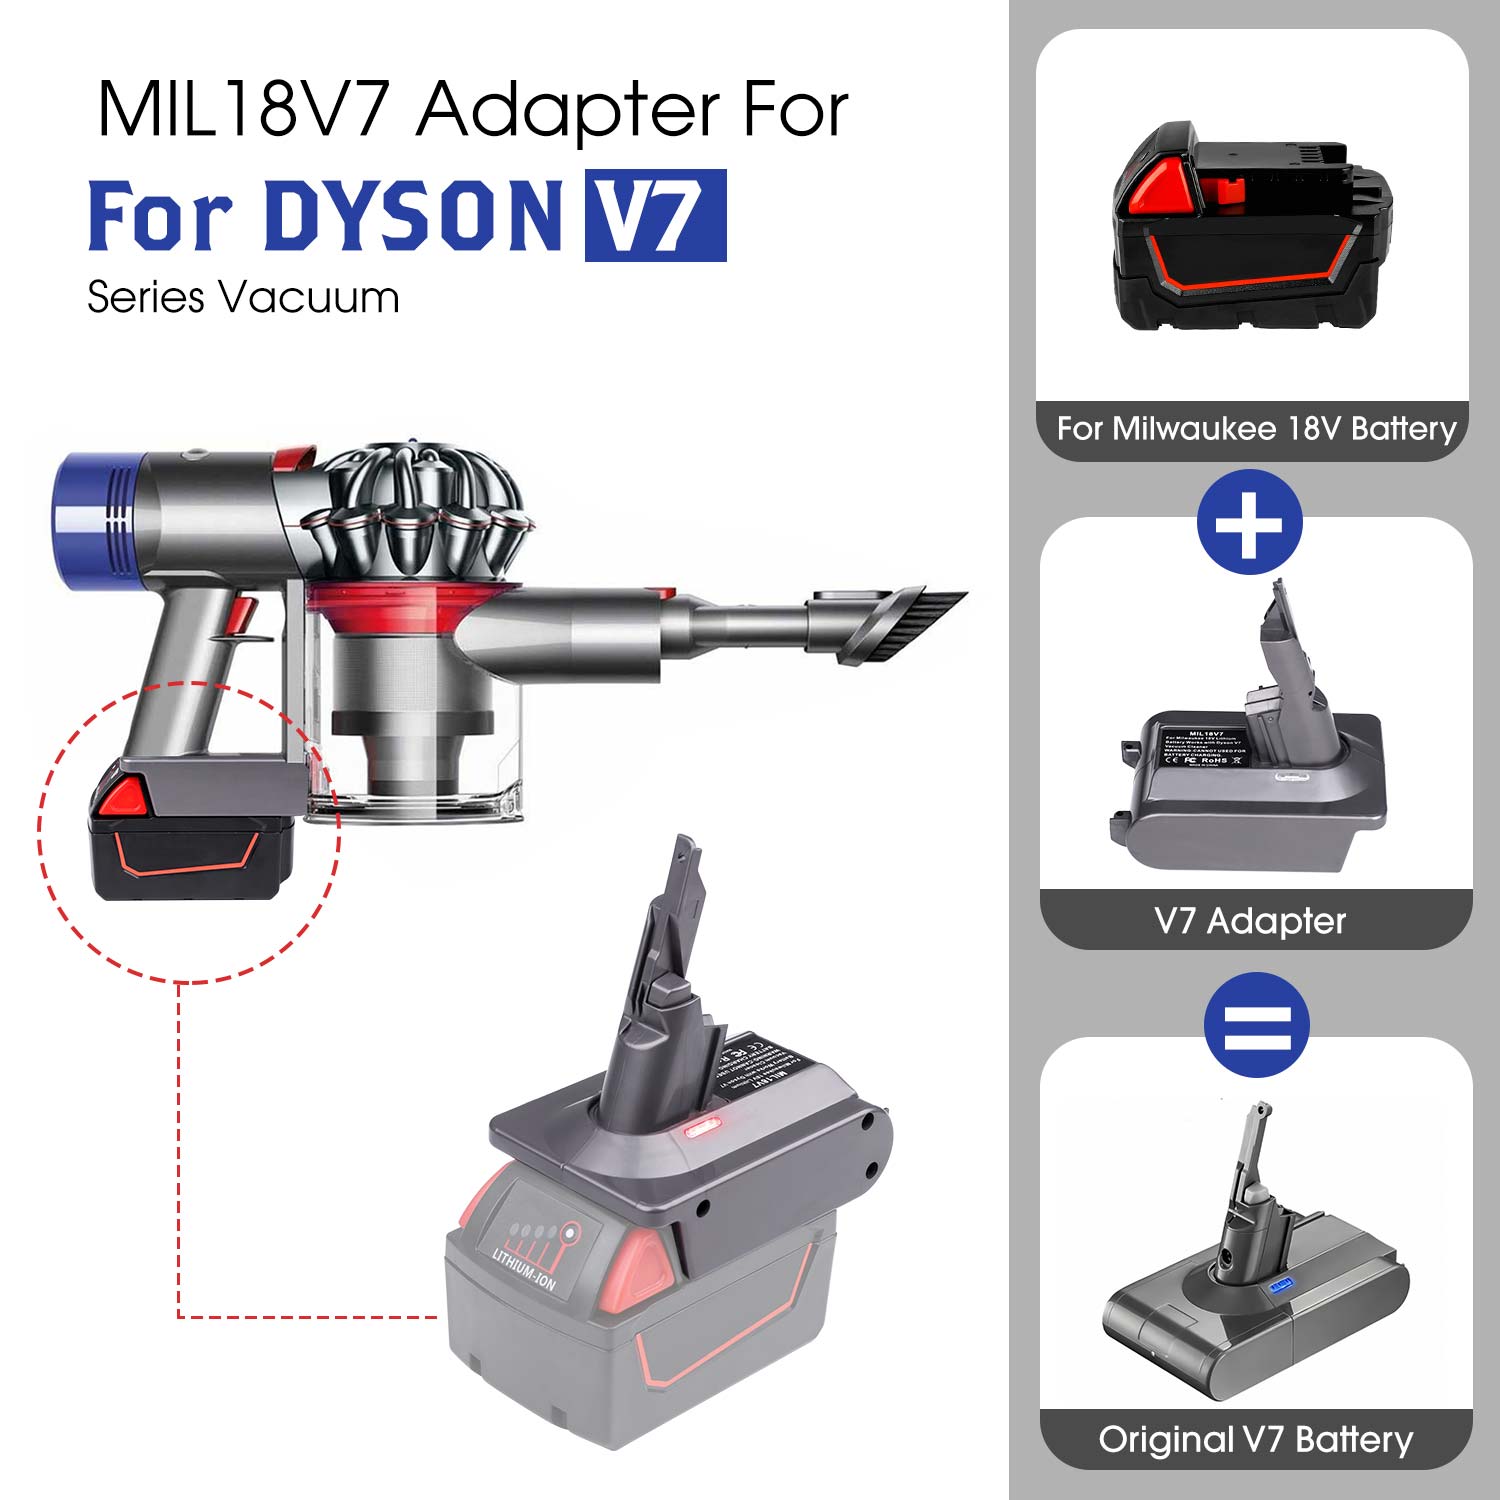 Для адаптера Dyson V7 для перетворювача літієвої батареї Milwaukee M18 18 В на Dyson V7, використовуйте для пилососа Dyson V7